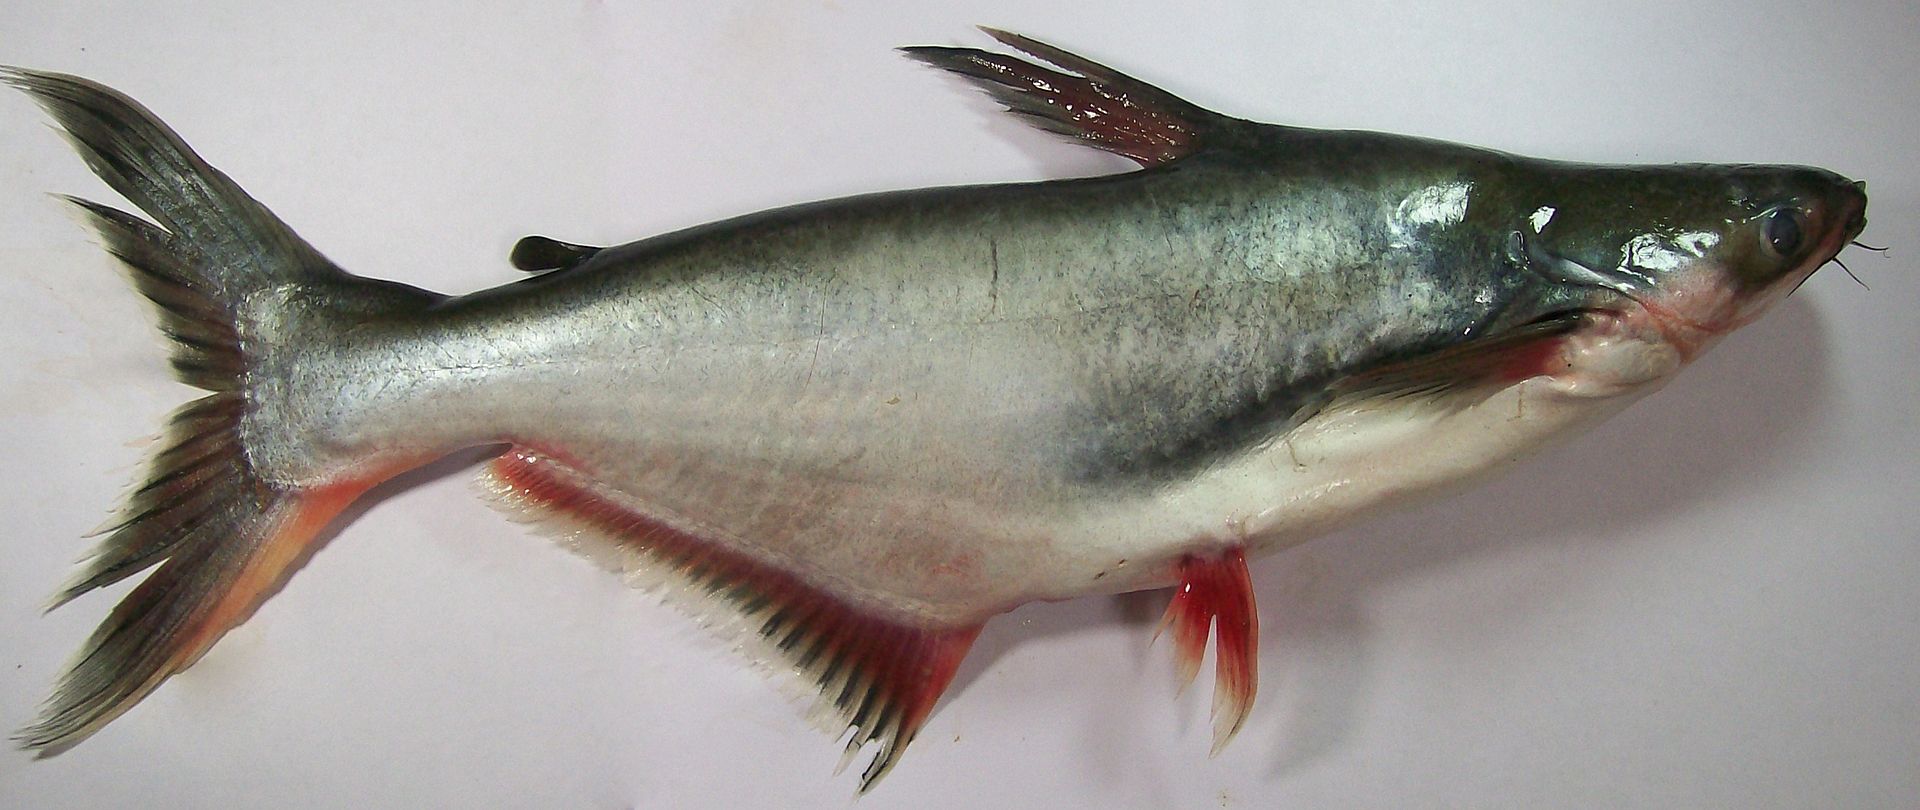 Cá tra là một loài cá thuộc họ cá da trơn, sống ở các vùng nước ngọt Đông Á. Nó tập trung đông nhất ở sông Chao Phrai và sông Mekong